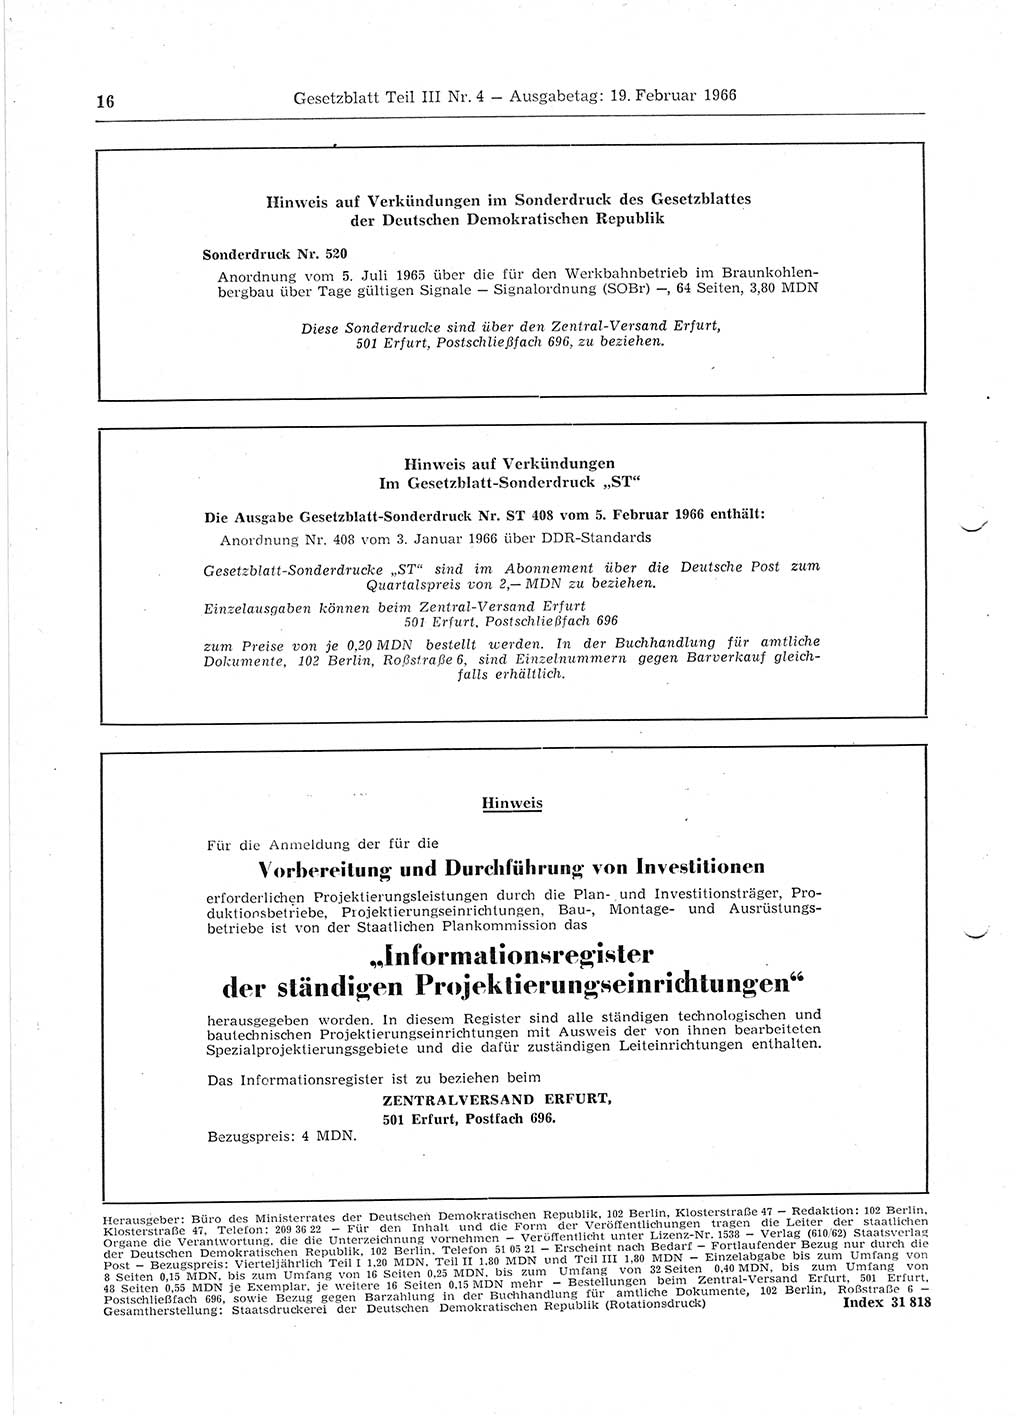 Gesetzblatt (GBl.) der Deutschen Demokratischen Republik (DDR) Teil ⅠⅠⅠ 1966, Seite 16 (GBl. DDR ⅠⅠⅠ 1966, S. 16)